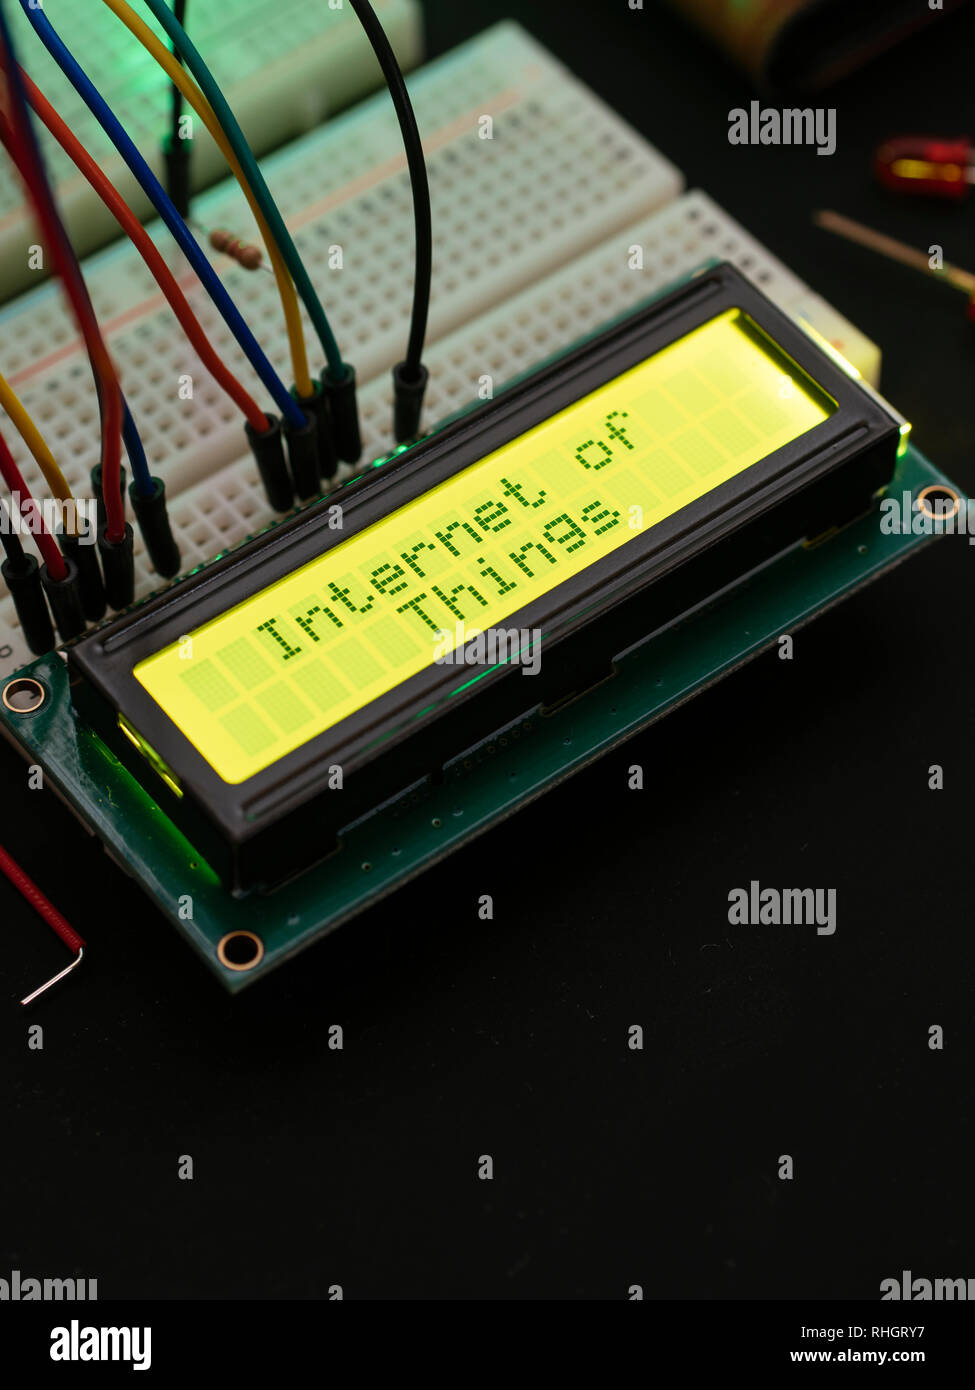 Affichage LCD connecté à un micro-contrôleur affichant le texte 'Internet des objets'. Banque D'Images